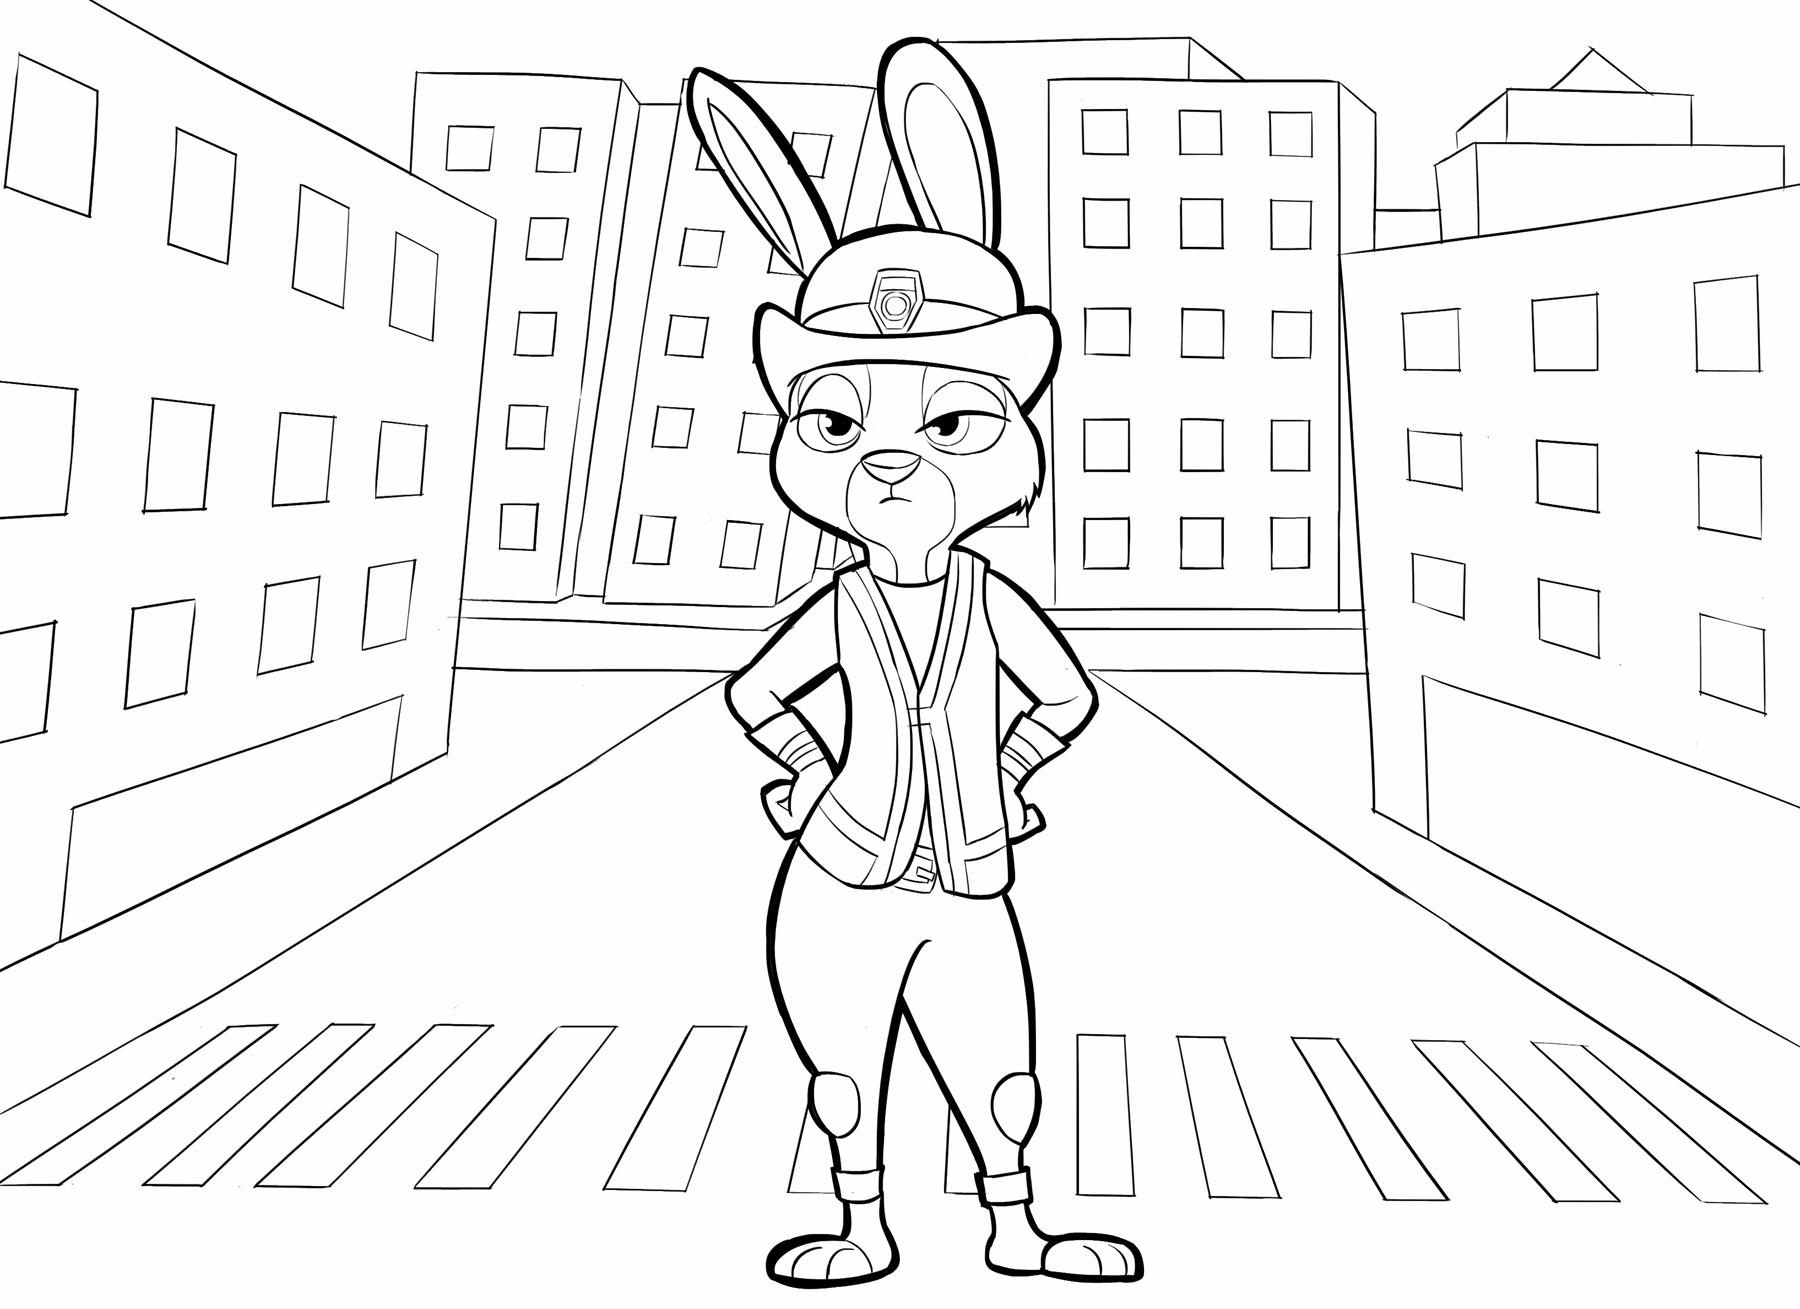 Zootropolis - La coniglietta Judy Hopps nella sua uniforme da poliziotta